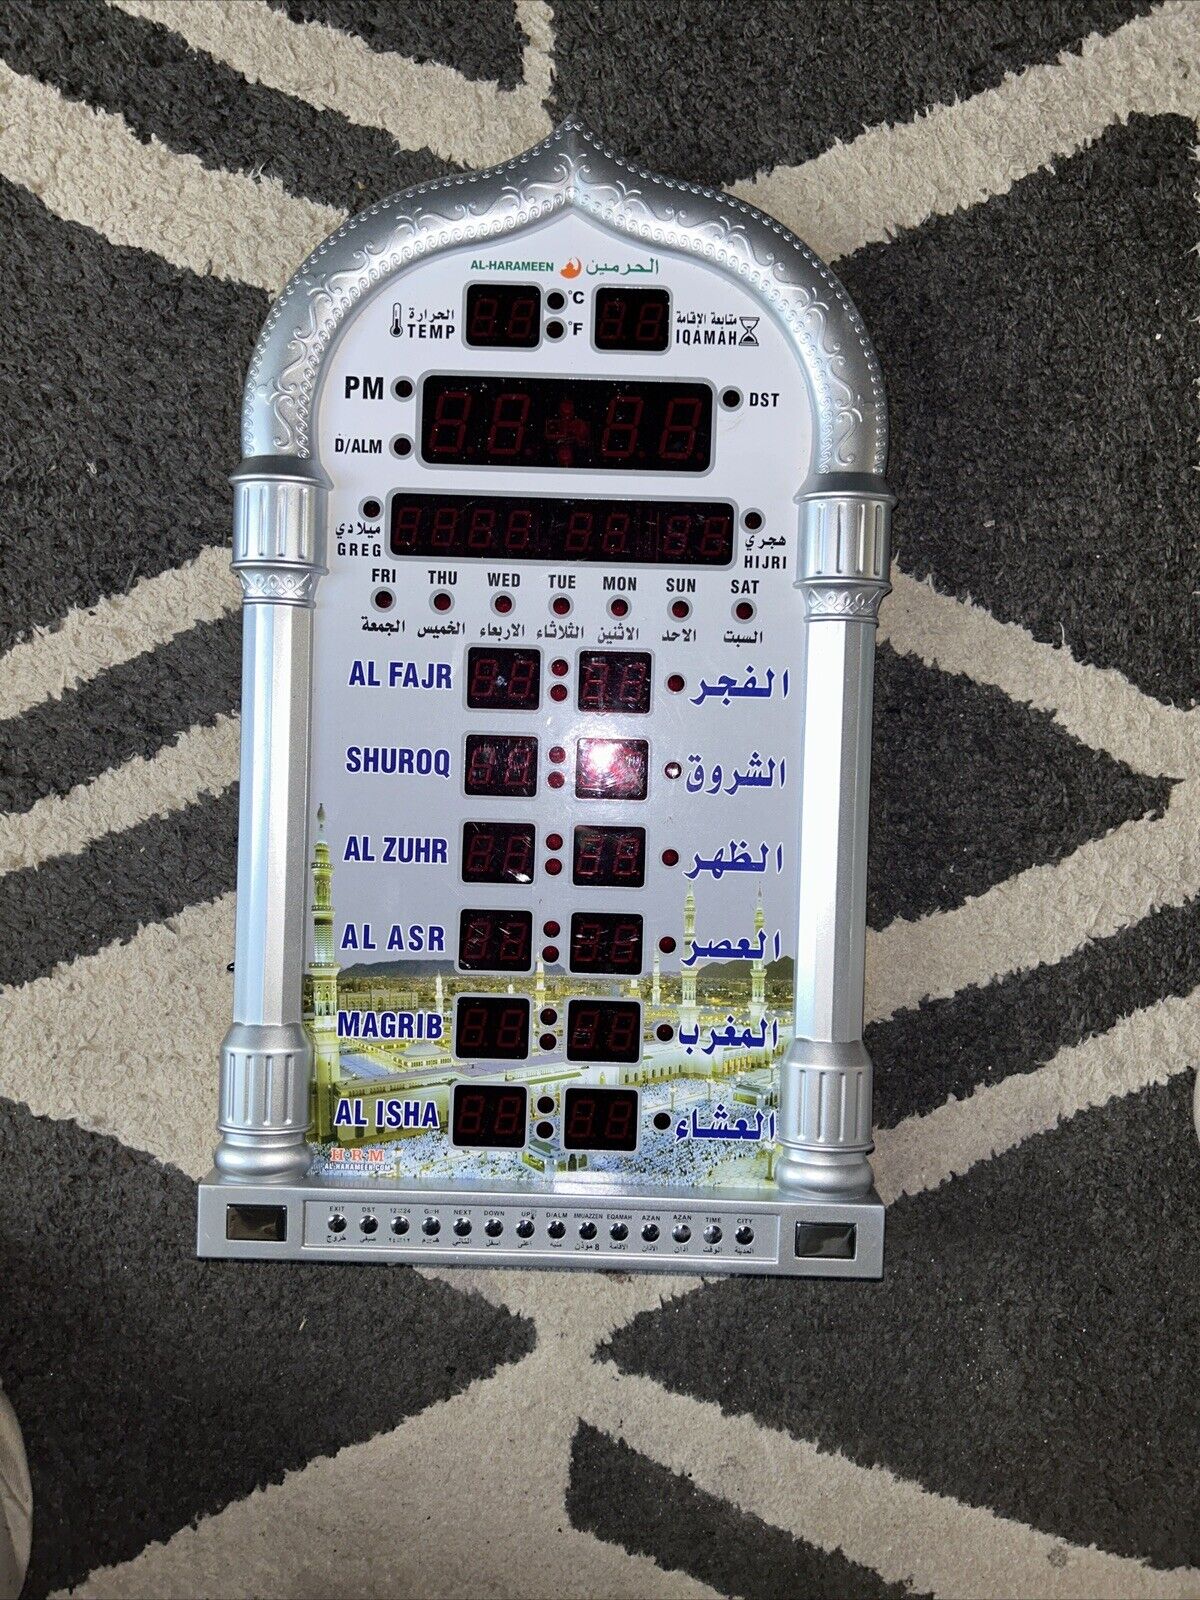 AL-HARAMEEN Azan Prayer Clock, New Led Wall Clock No Remote Or Charge Cord.